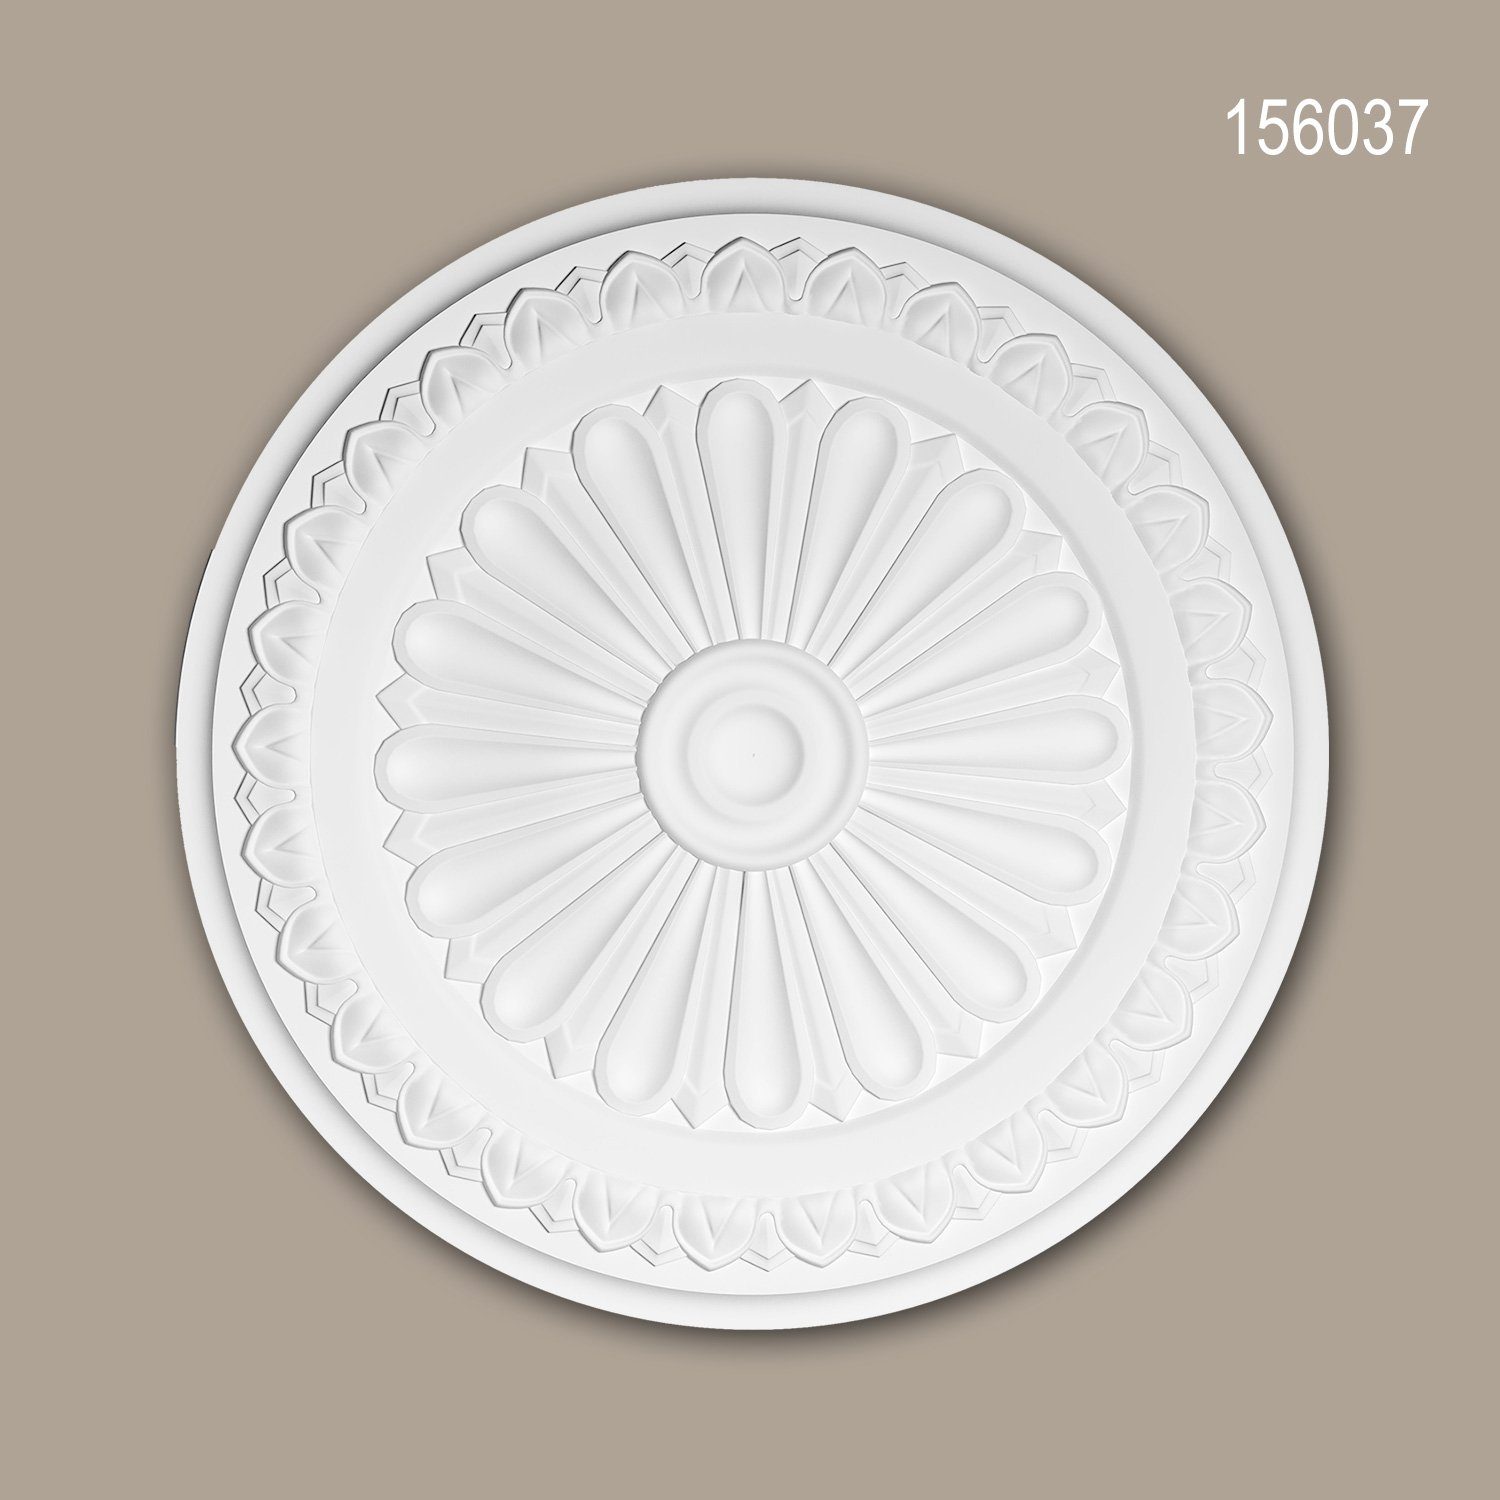 Stil: Stuckrosette, Durchmesser 156037 Decken-Rosette cm), Deckenrosette, Zierelement, weiß, (Rosette, 33 1 Profhome Medallion, vorgrundiert, Neo-Klassizismus Deckenelement, St.,